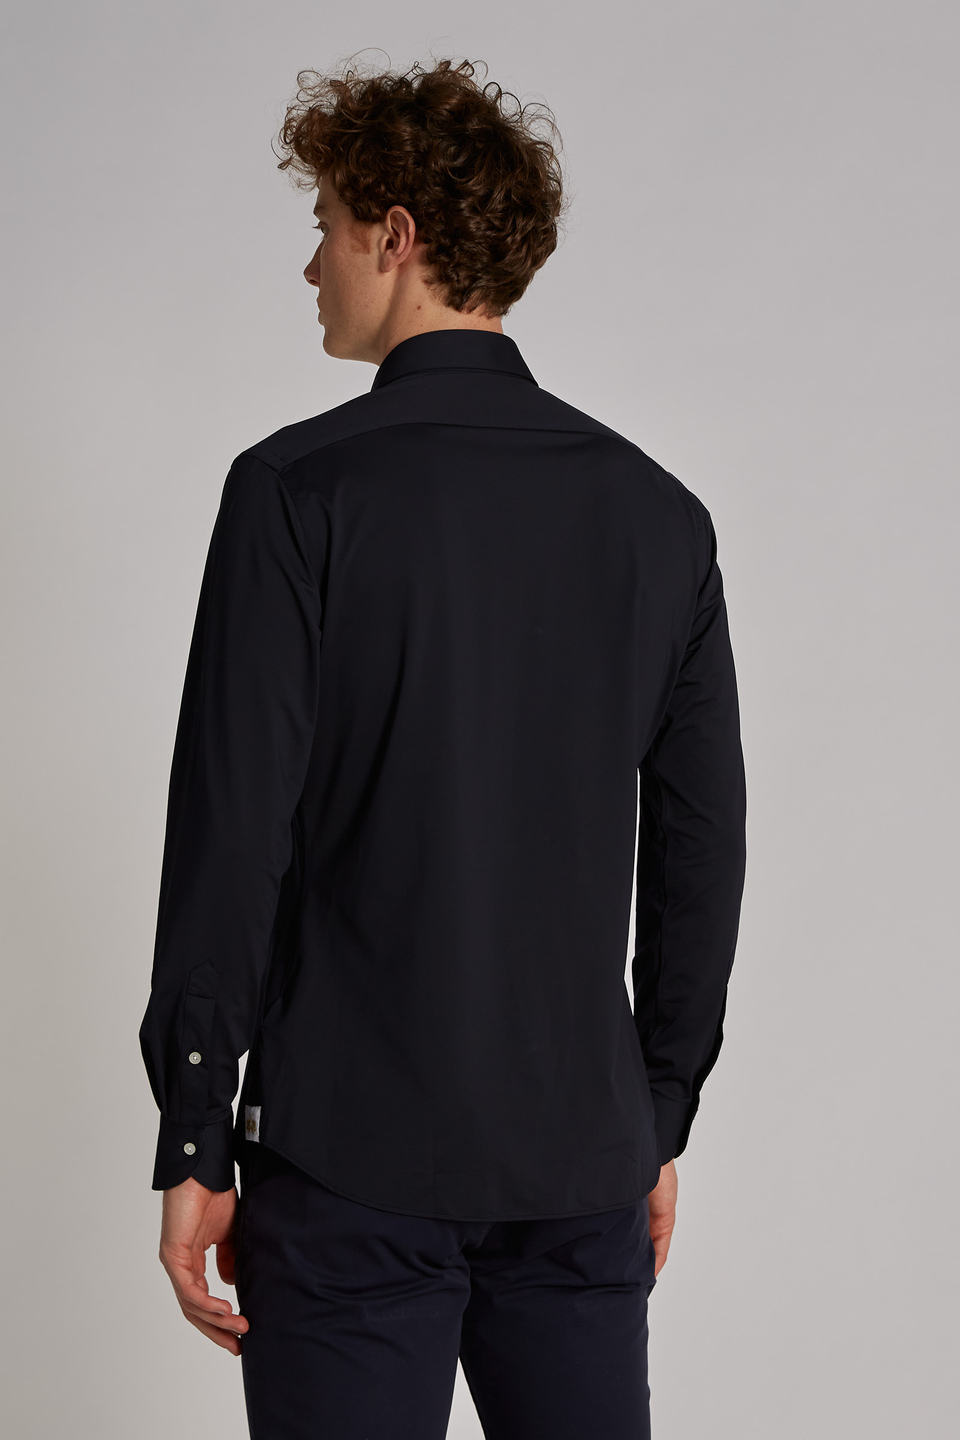 Blue Ribbon-Herrenhemd aus Baumwolljersey und langen Ärmeln im klassischen Schnitt - La Martina - Official Online Shop